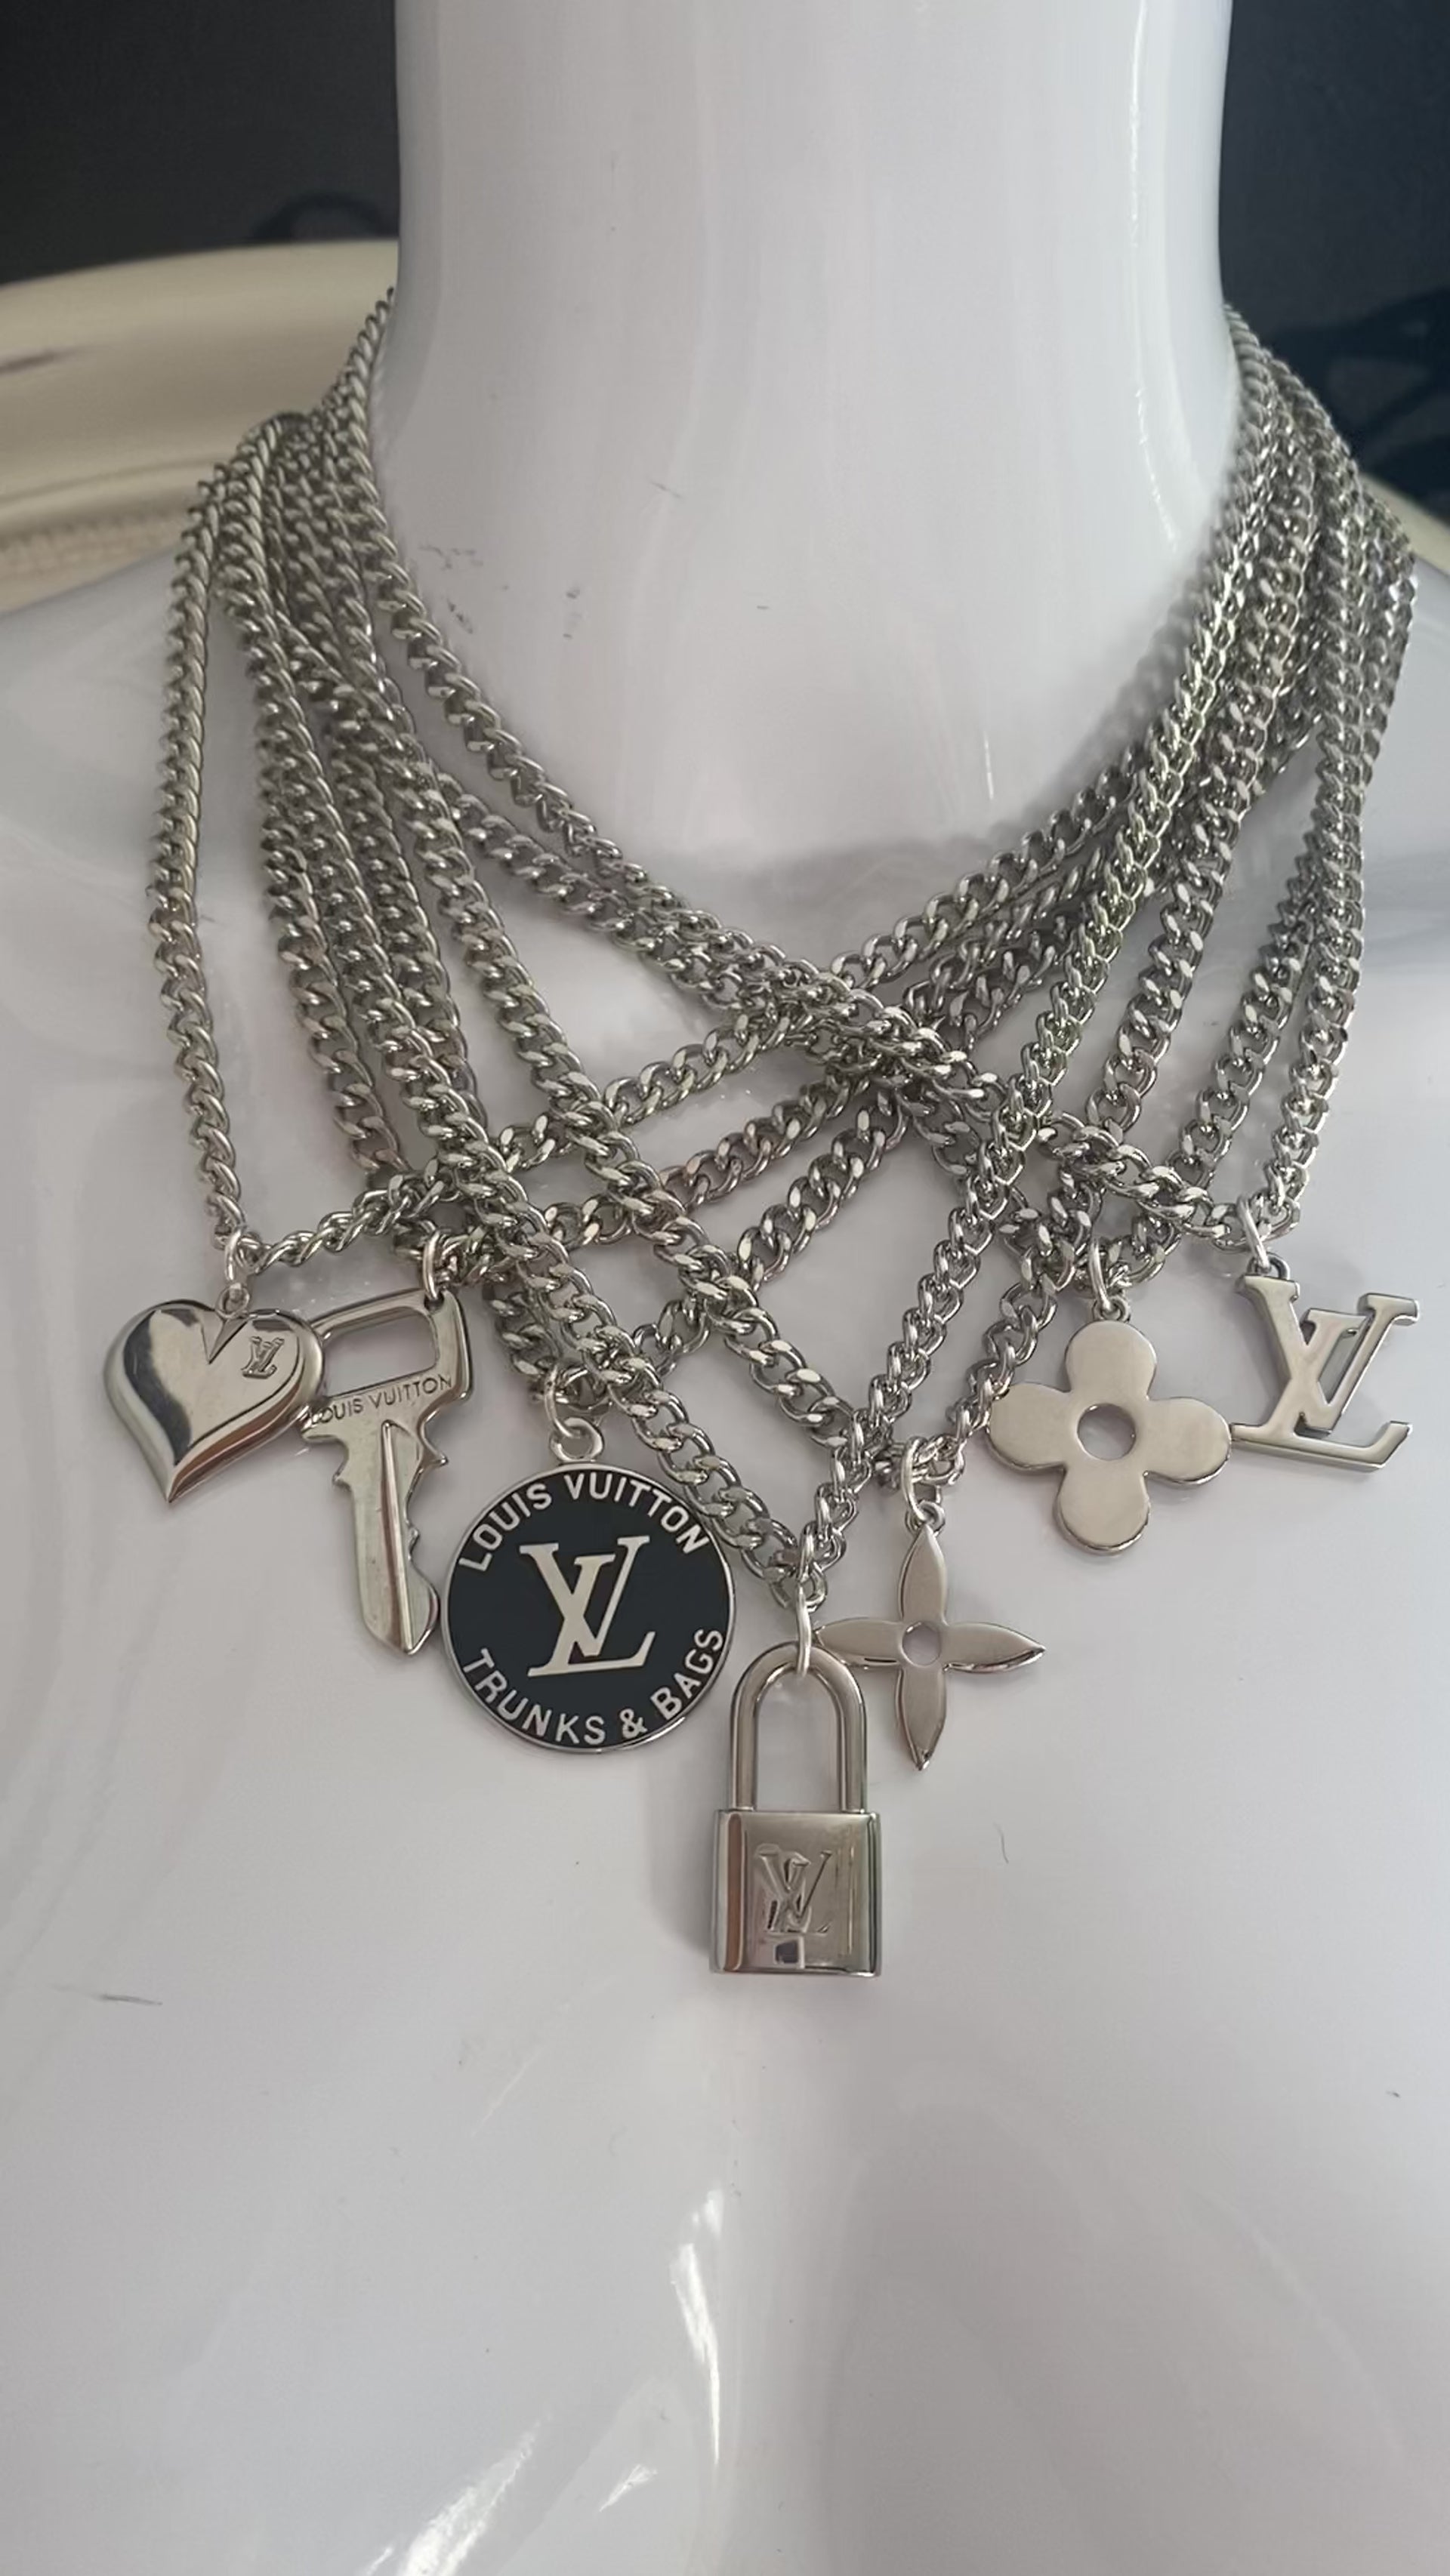 Authentic LOUIS VUITTON vintage Key pendant reworked necklace